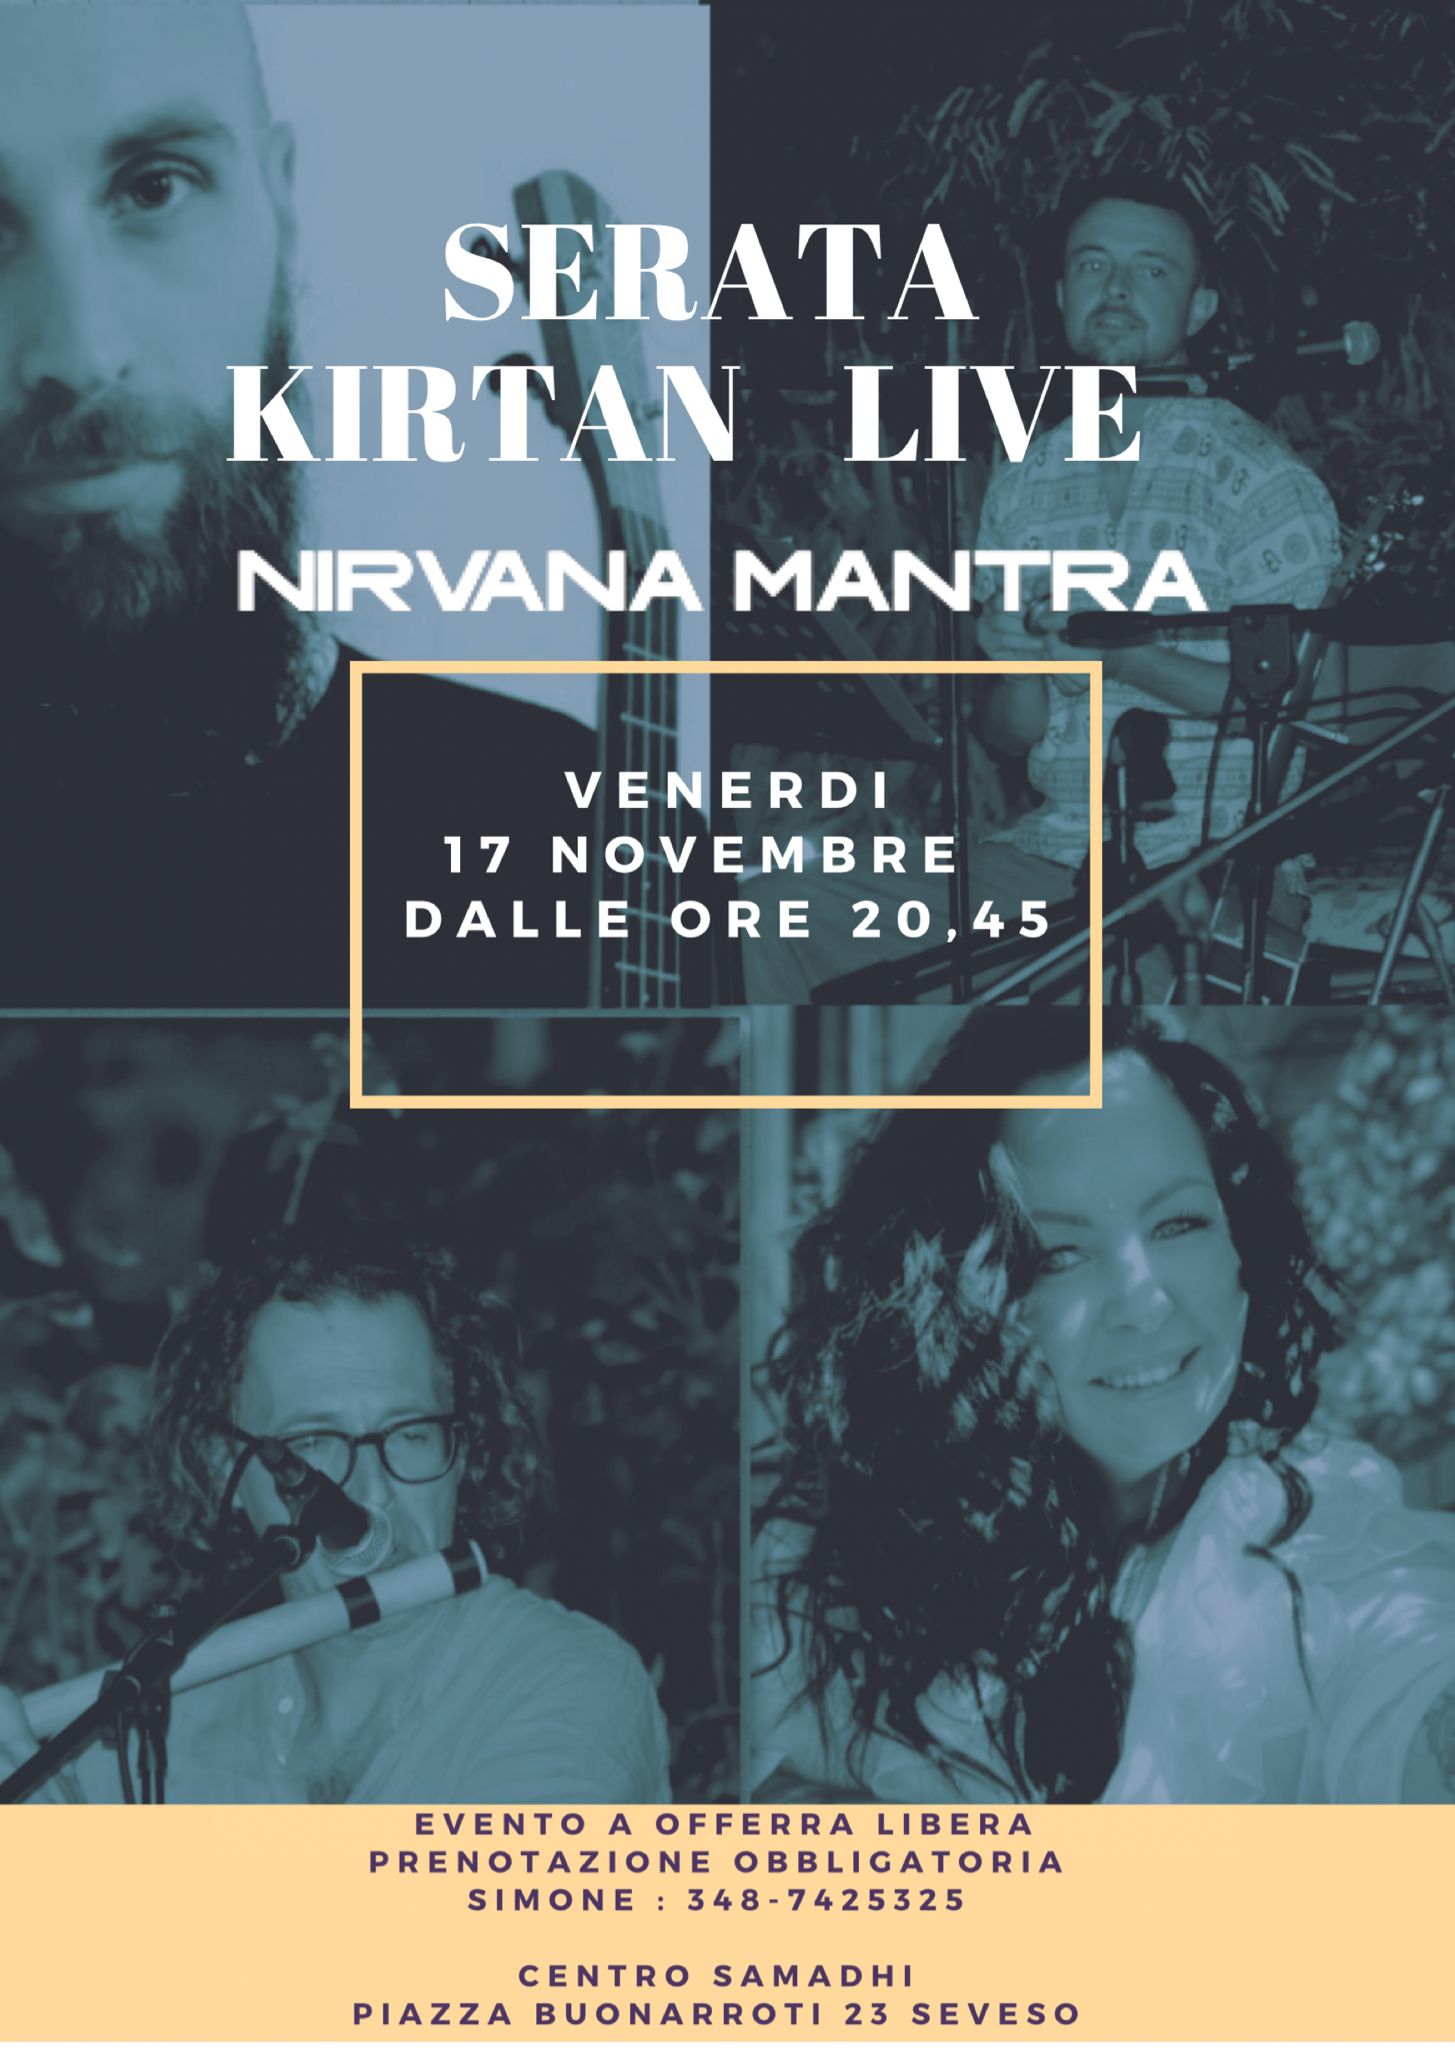 Venerdì 17/11 Serata Kirtan coi Nirvana Mantra